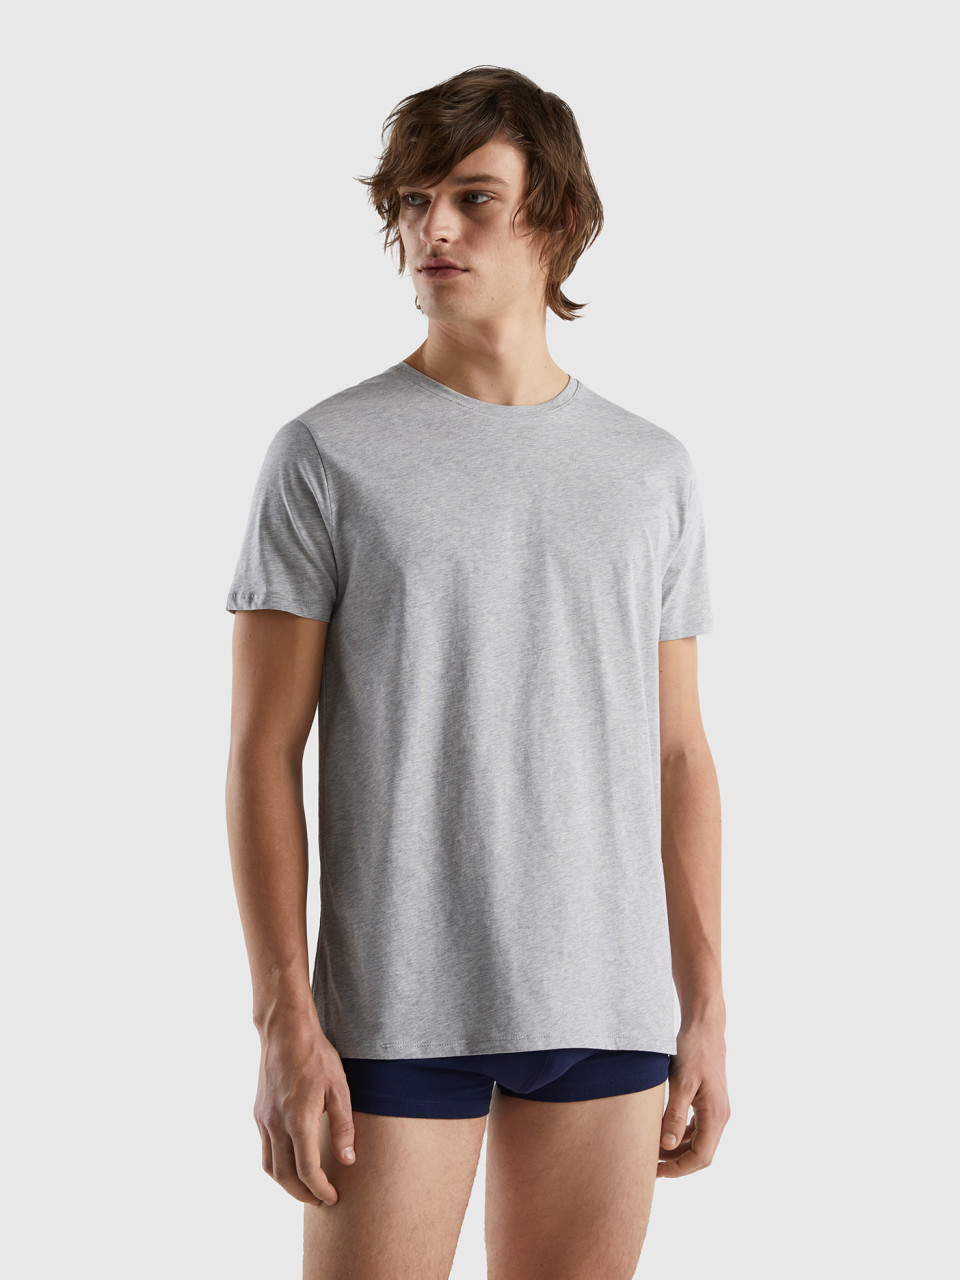 Benetton, Long Fiber Cotton T-shirt, Light Gray, Men